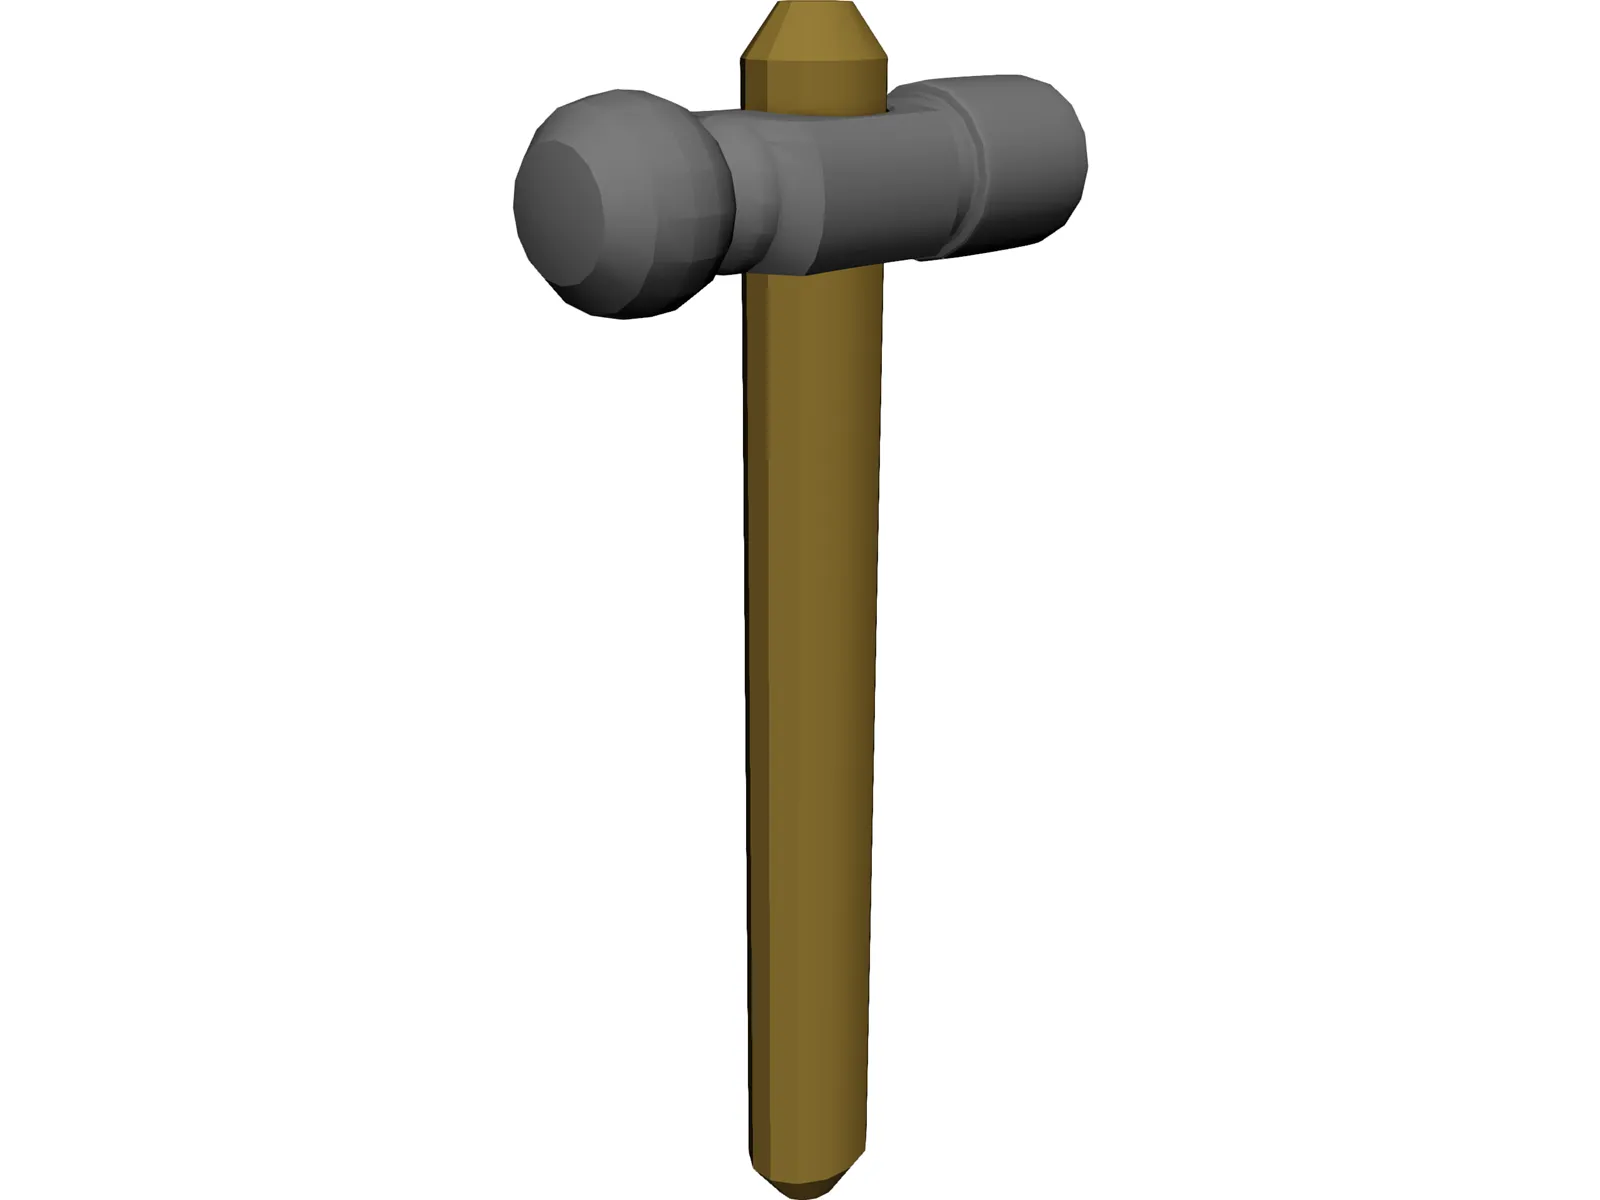 Ball Peen Hammer 3D Model